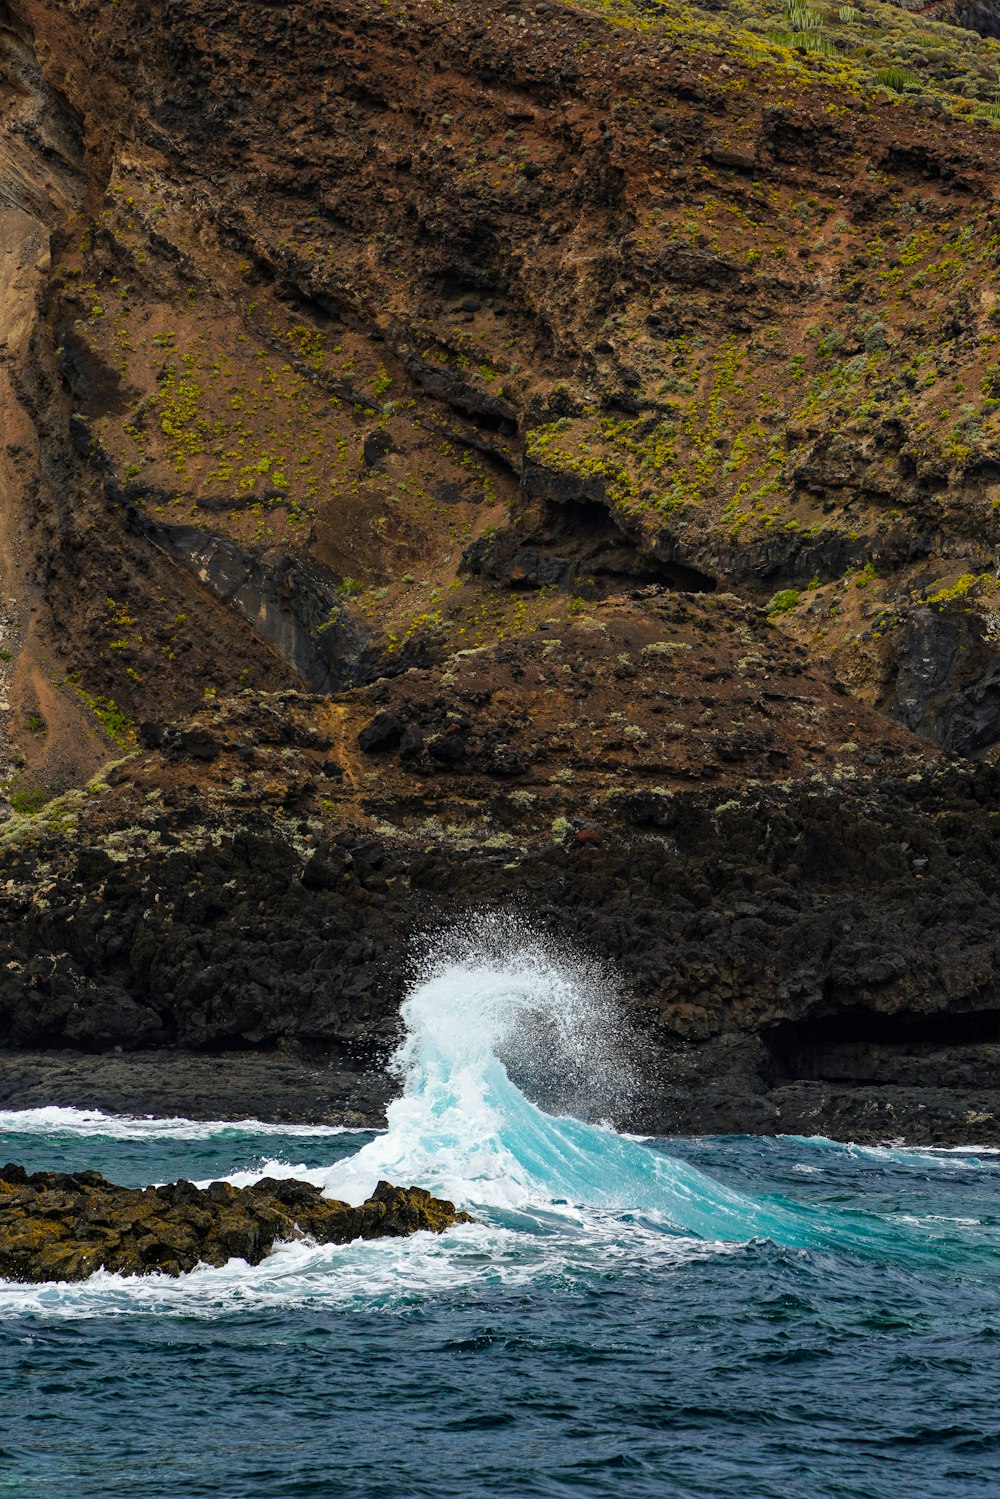 a wave crashing into the ocean near a rocky cliff